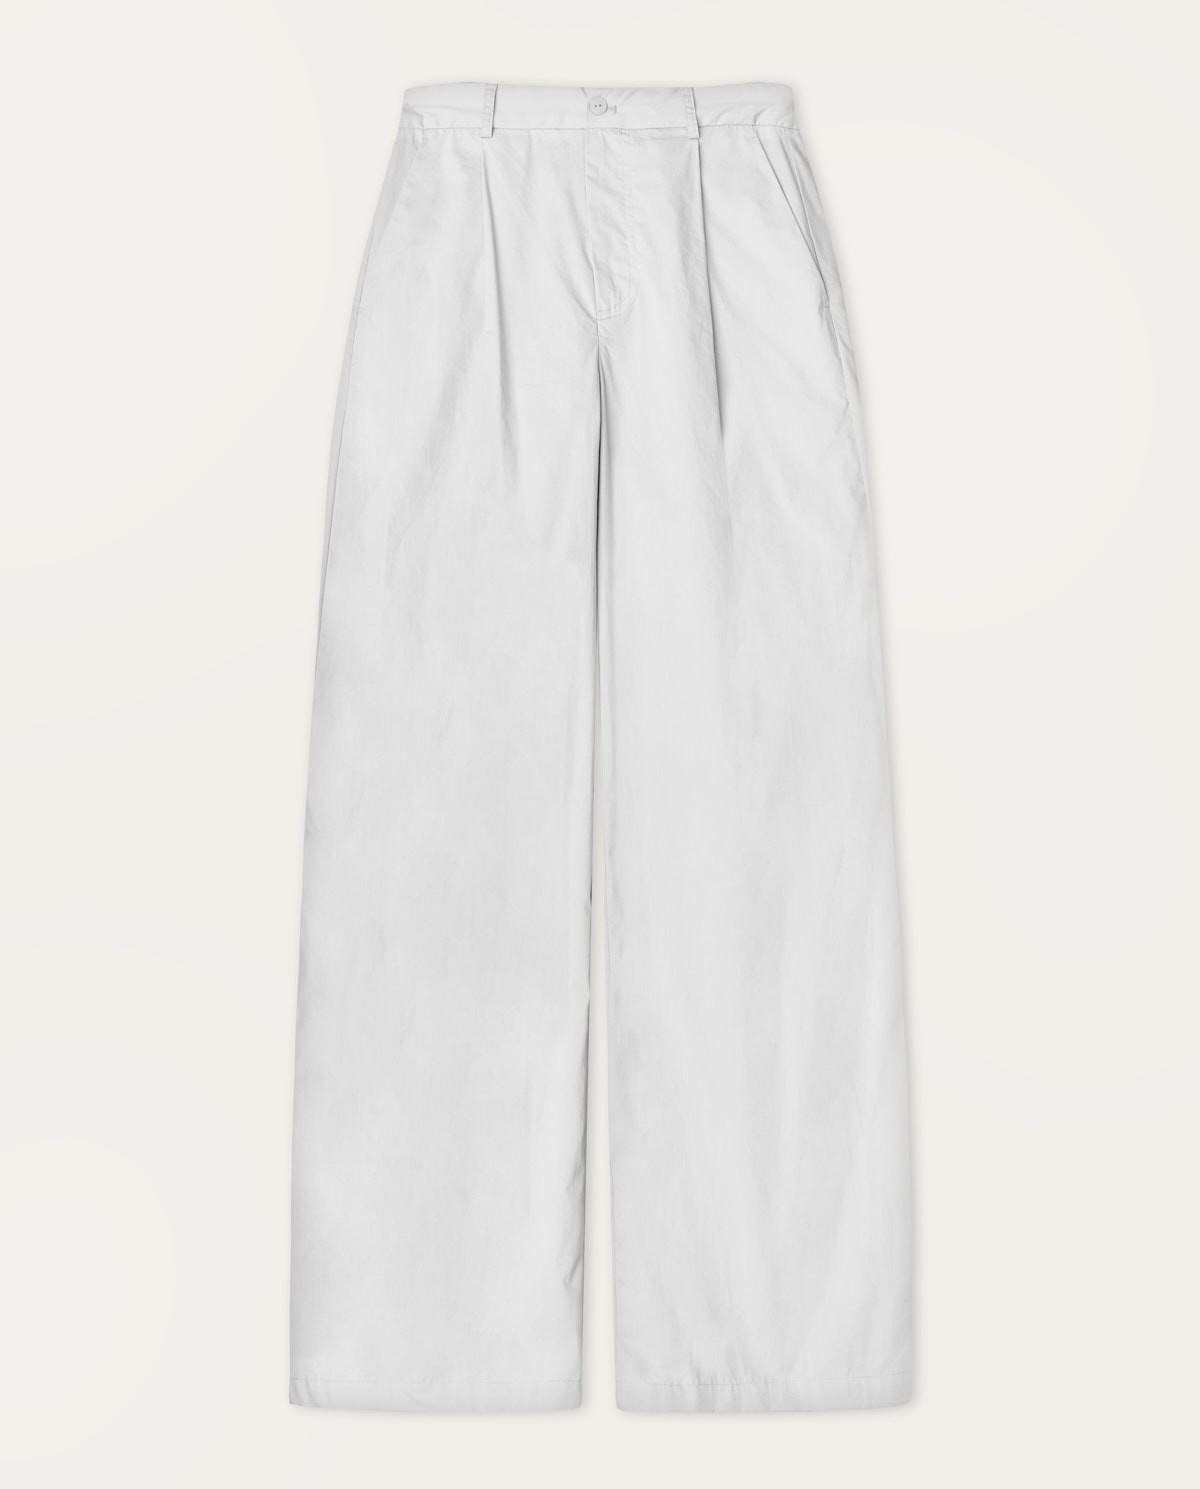 Pantalons cotó wide leg Blanc 2